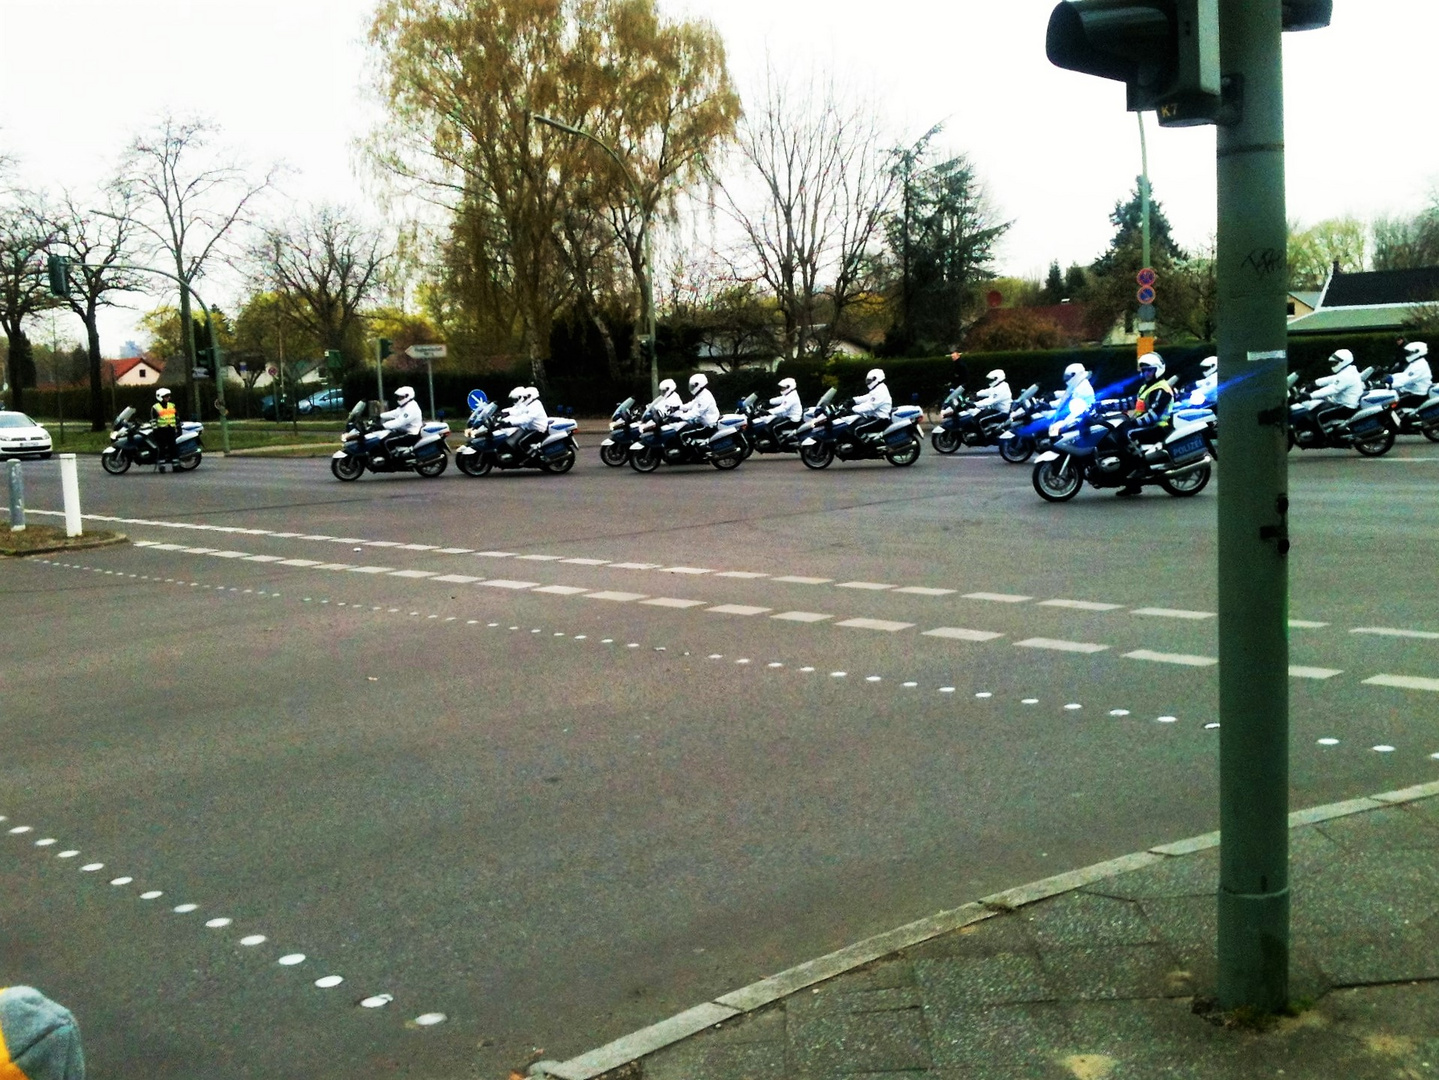 Motorrad mit Blaulicht -Aufmerksamer Beobachter (unten links)